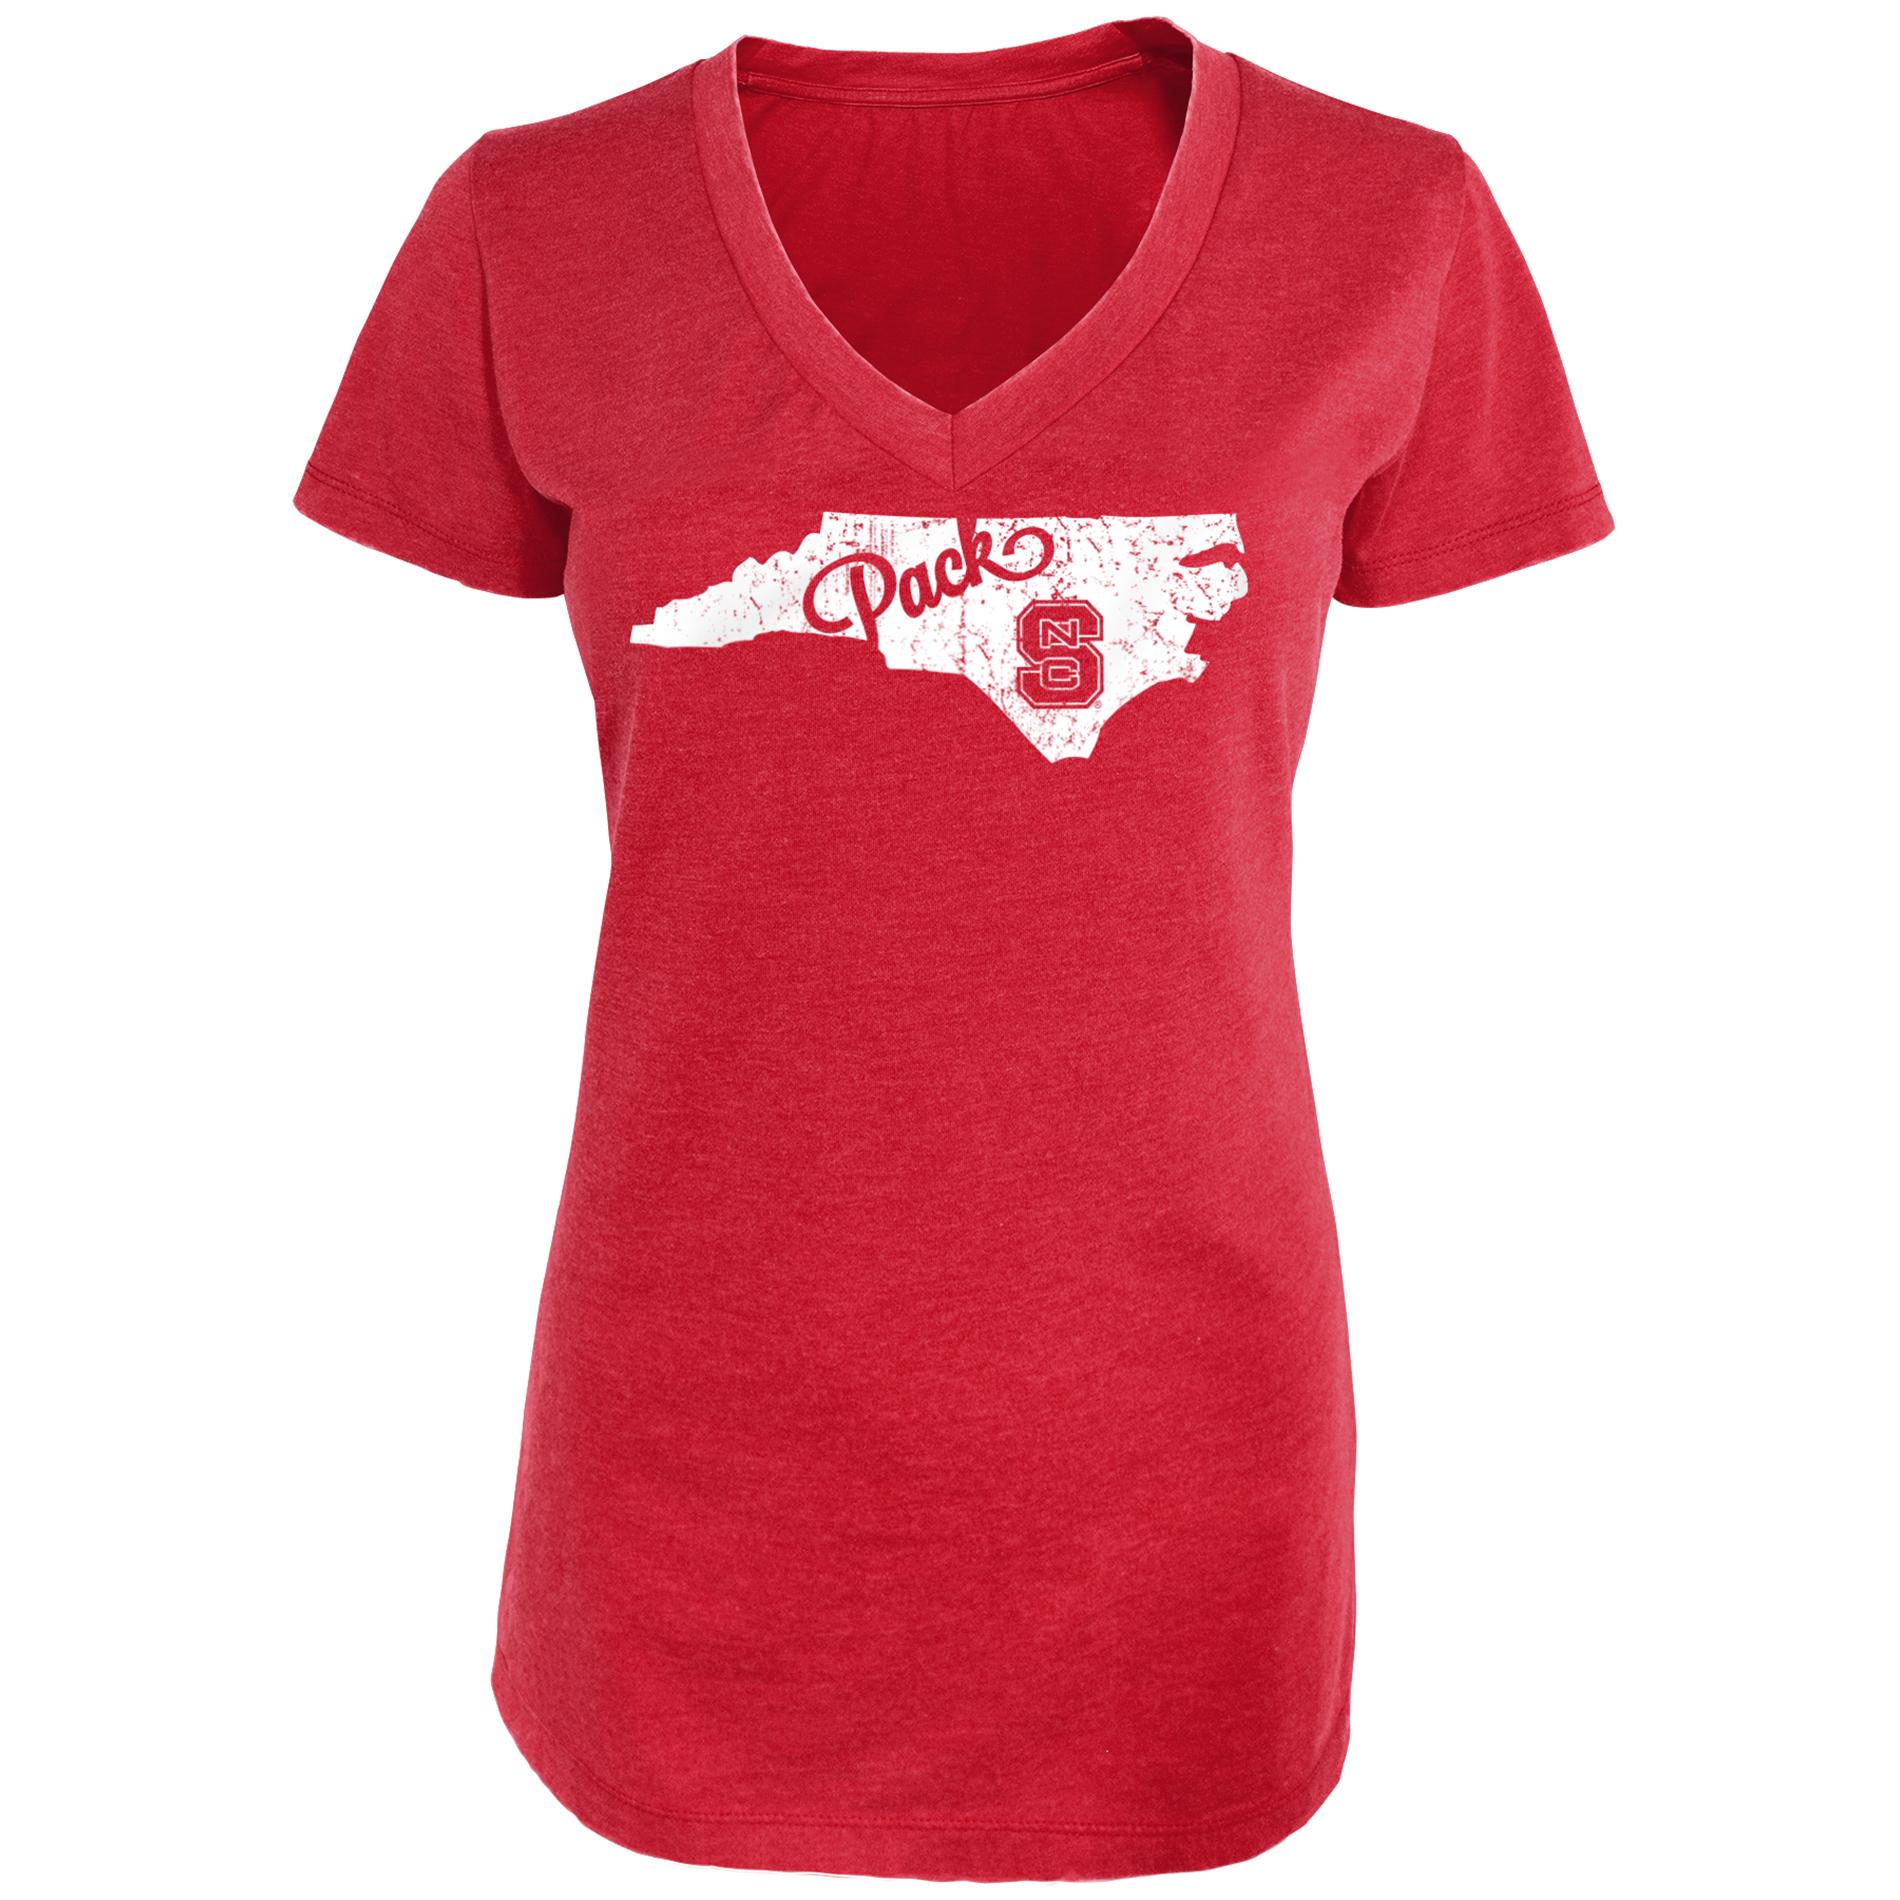 NCAA Women's Graphic T-Shirt - North Carolina State